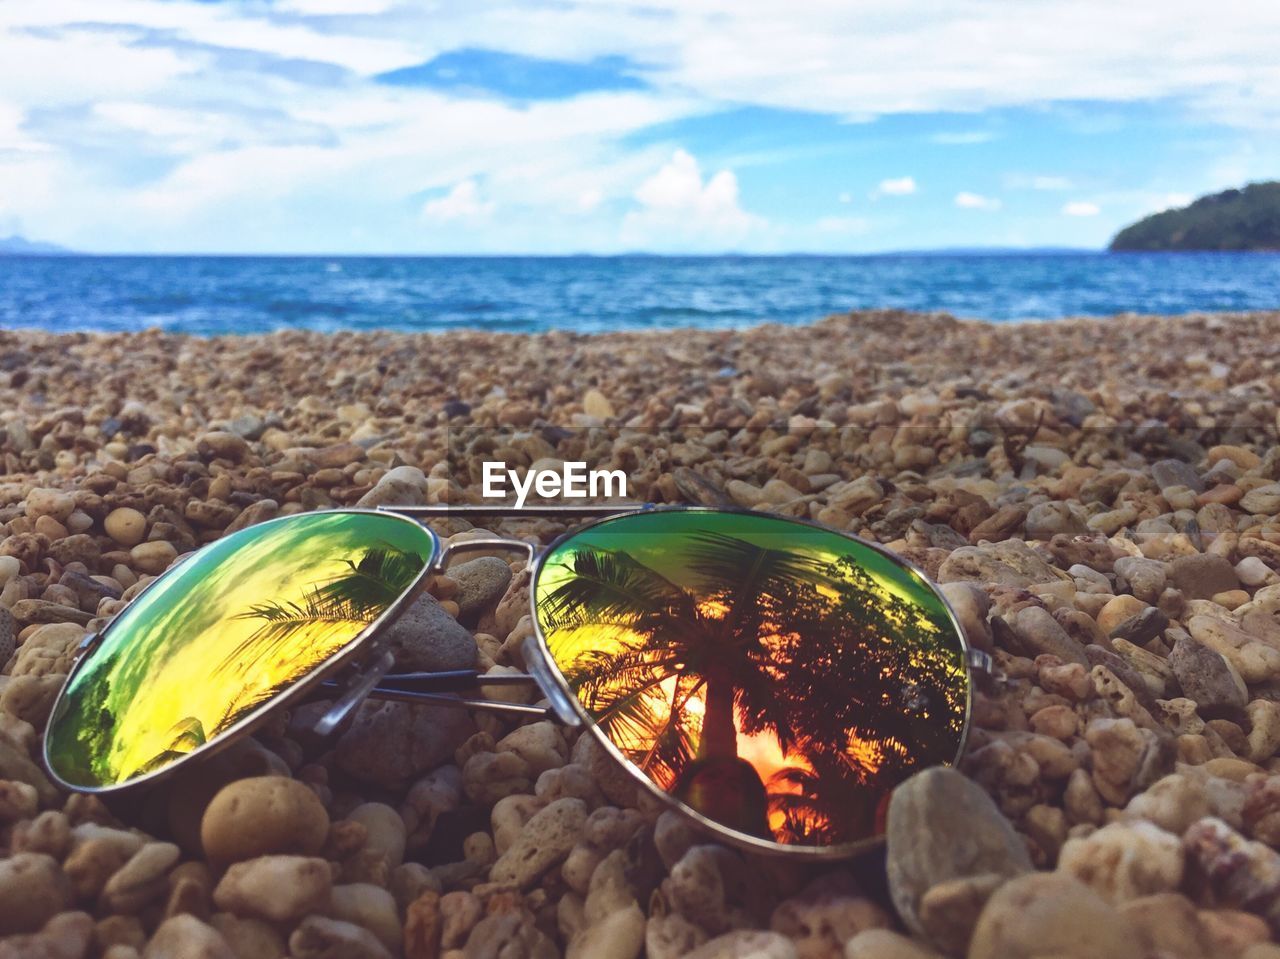 Sunglasses on pebble beach